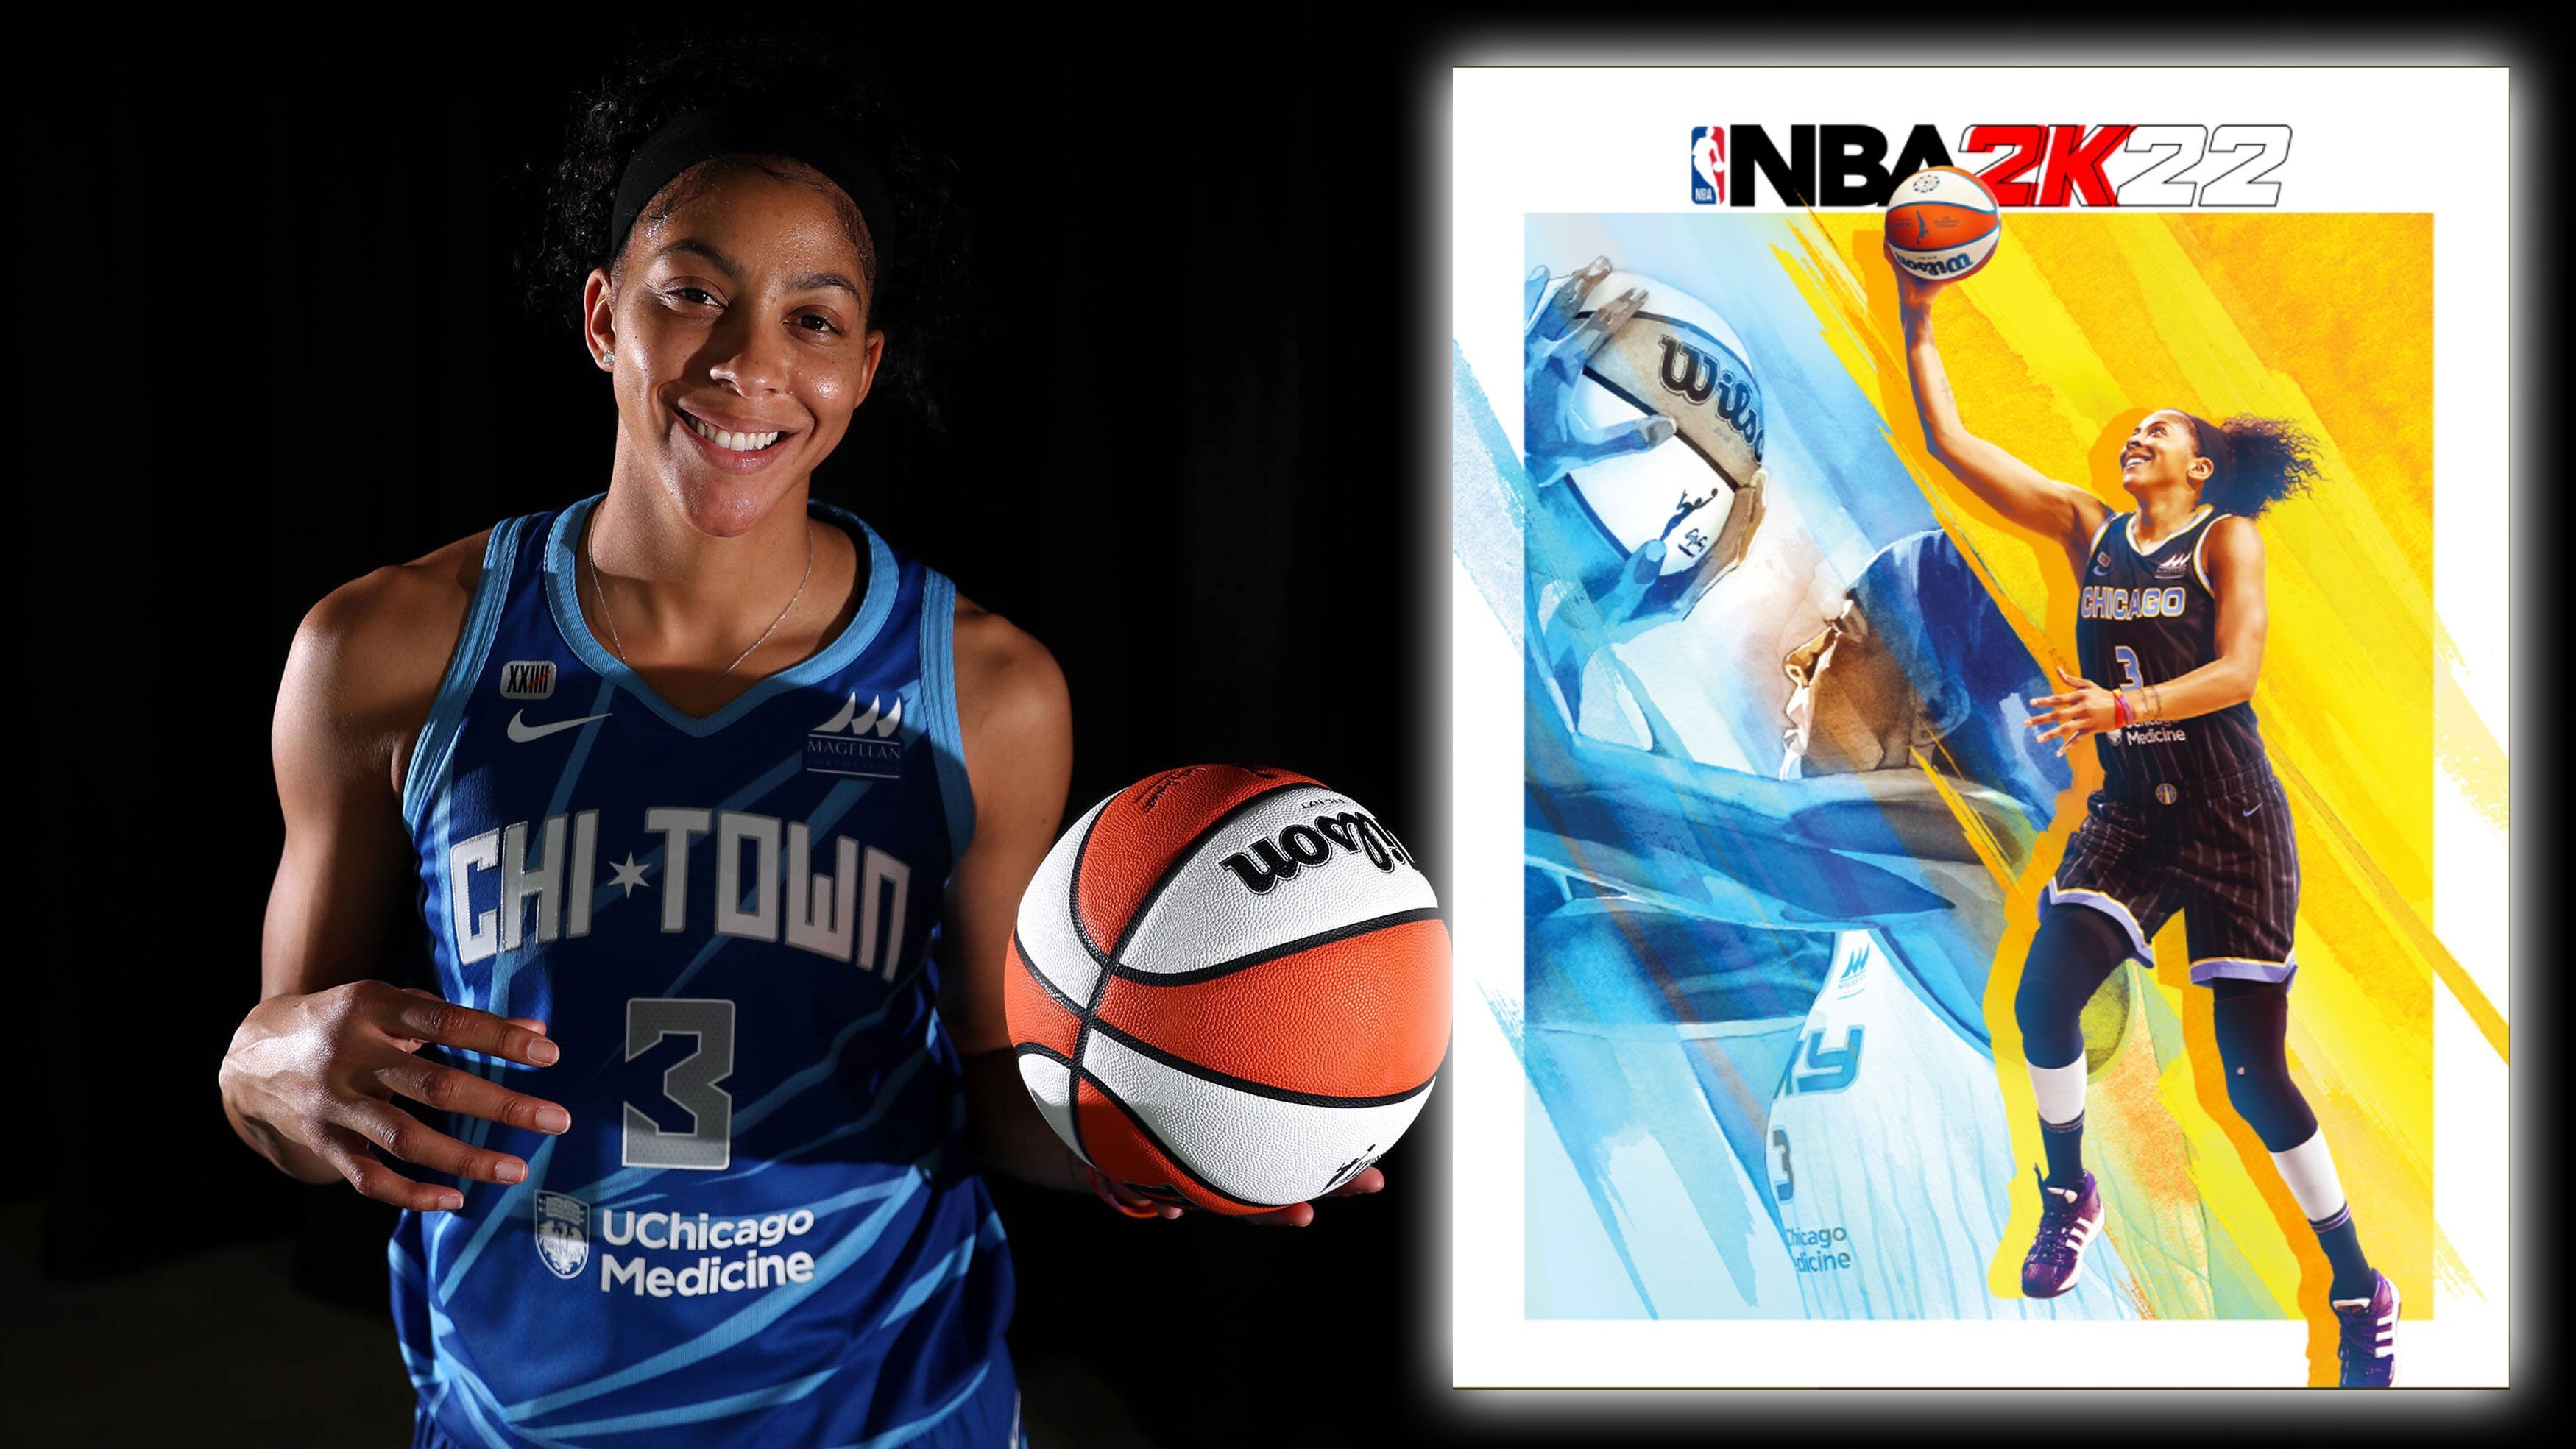 
                <strong>"WNBA 25th Anniversary Edition": Candace Parker</strong><br>
                Und die nächste Legende folgt sogleich. Für die WNBA Special Edition zum 25. Geburtstag ziert keine geringere als Candace Parker das neue 2K-Cover. Parker spielt ihre 14. WNBA-Saison und wechselte in dieser Saison zu den Chicago Sky. Die zweifache MVP (Rookie-Saison 2008 und 2013) gehört zu den größten Spielerinnen in der Geschichte der WNBA. 2016 verhalf sie den LA Sparks zur Meisterschaft und krönte sich selbst zum Finals-MVP. Hinzu kommen zwei Olympische Goldmedaillen (2008, 2012) mit Team USA, sowie fünf All-Star-Nominierungen in der Liga. 
              